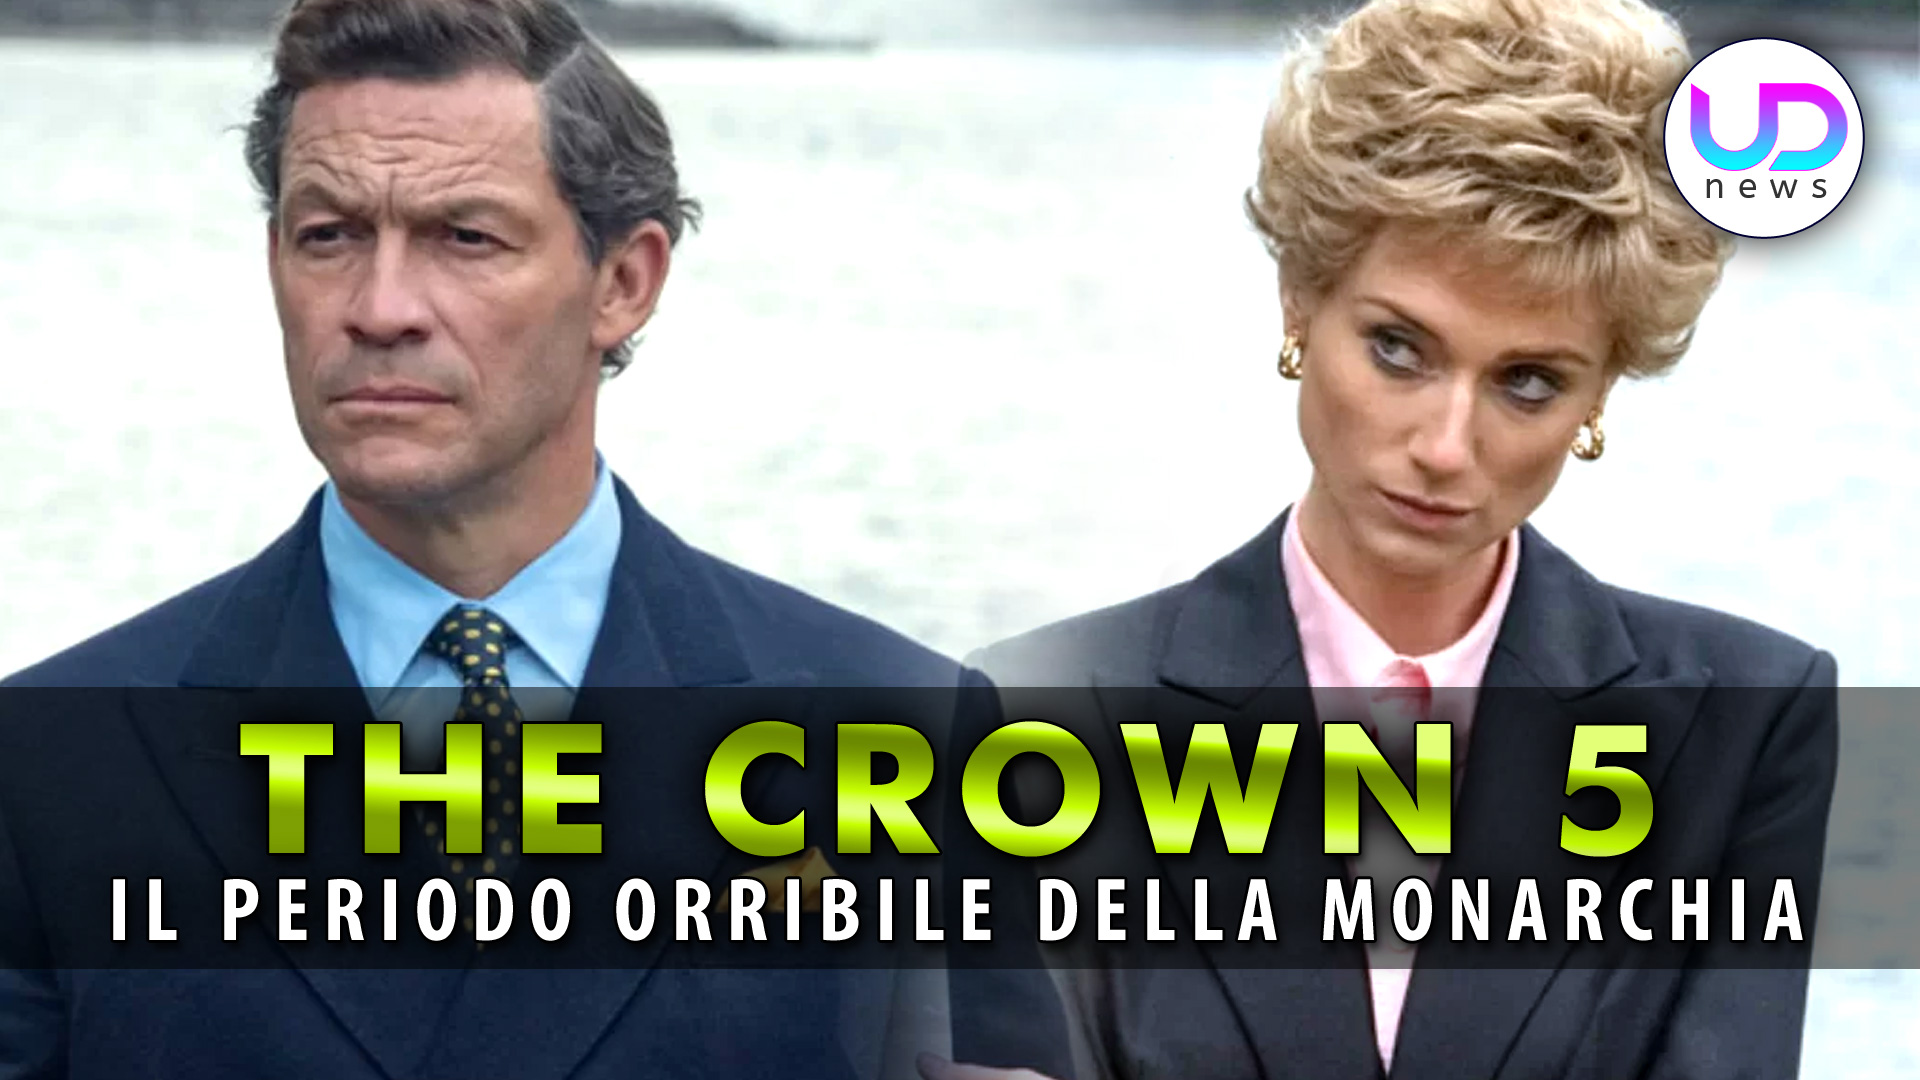 the-crown-5:-la-nuova-stagione-racconta-il-periodo-orribile-della-monarchia!-–-ud-news